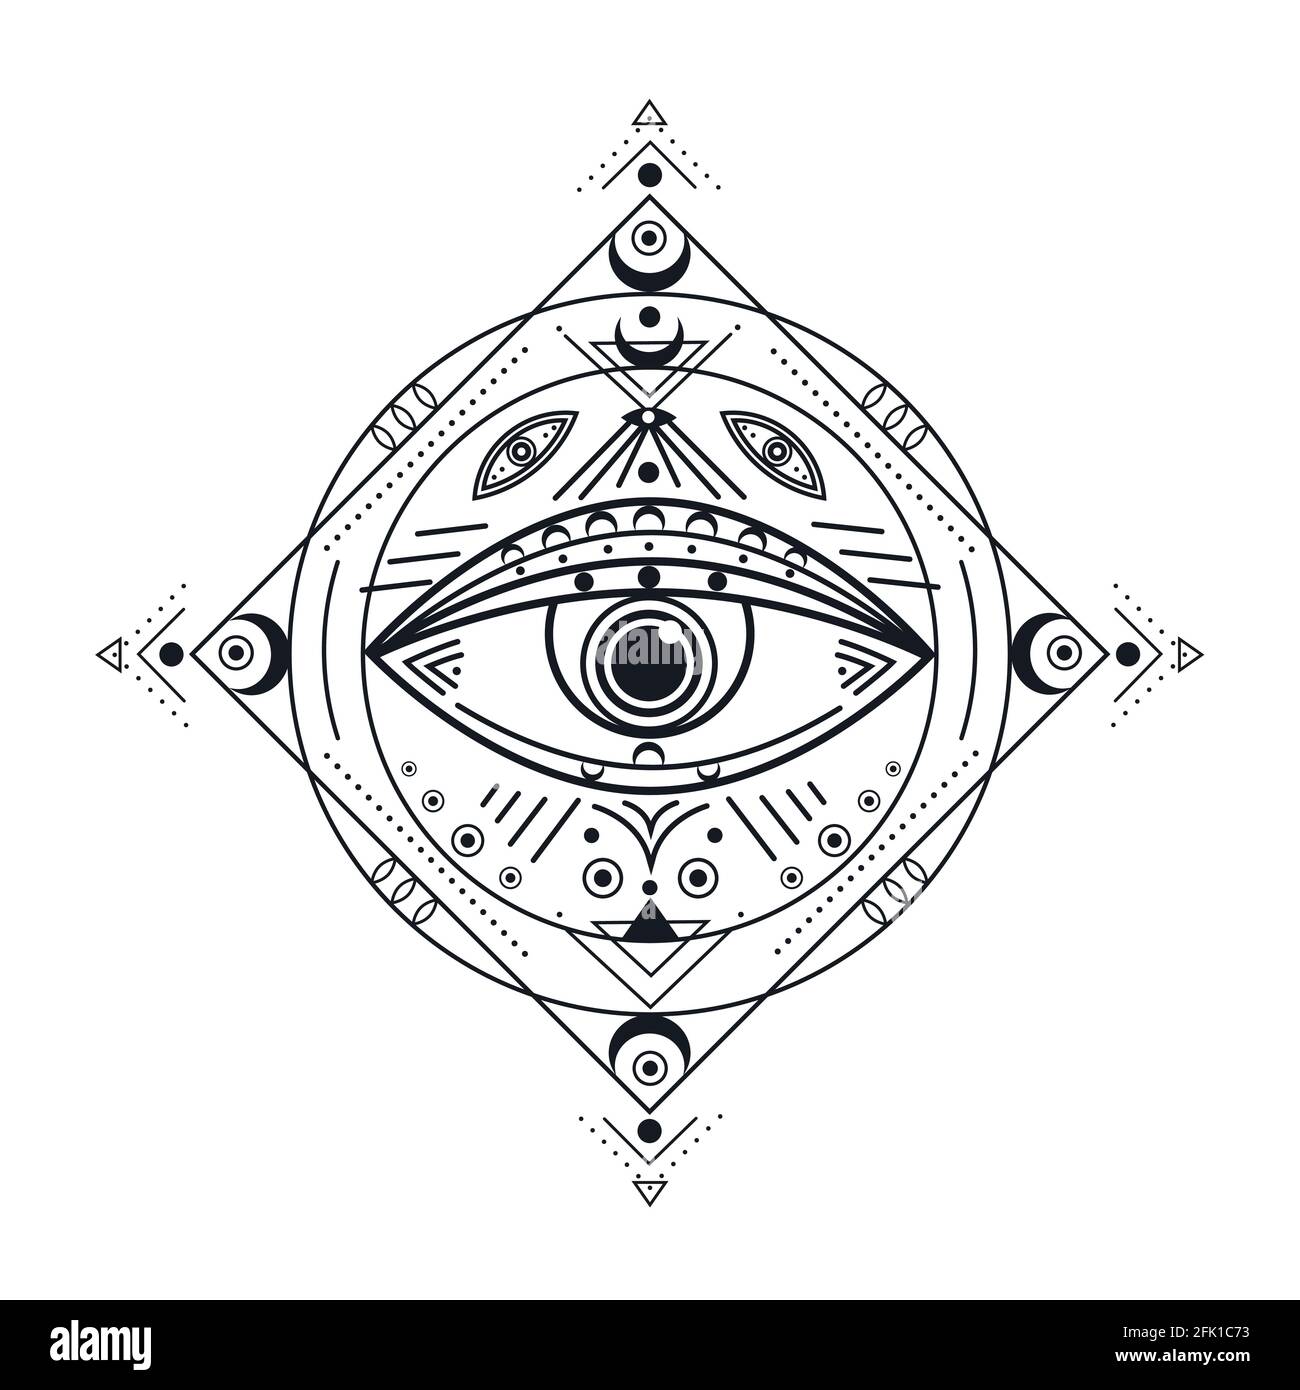 Alle sehen Auge. Schwarzes Illuminati-Symbol, Vorsehung geäugtes Emblem. Isoliertes Vintage Schutz okkultes Tattoo. Esoterische Vektorgrafik Stock Vektor